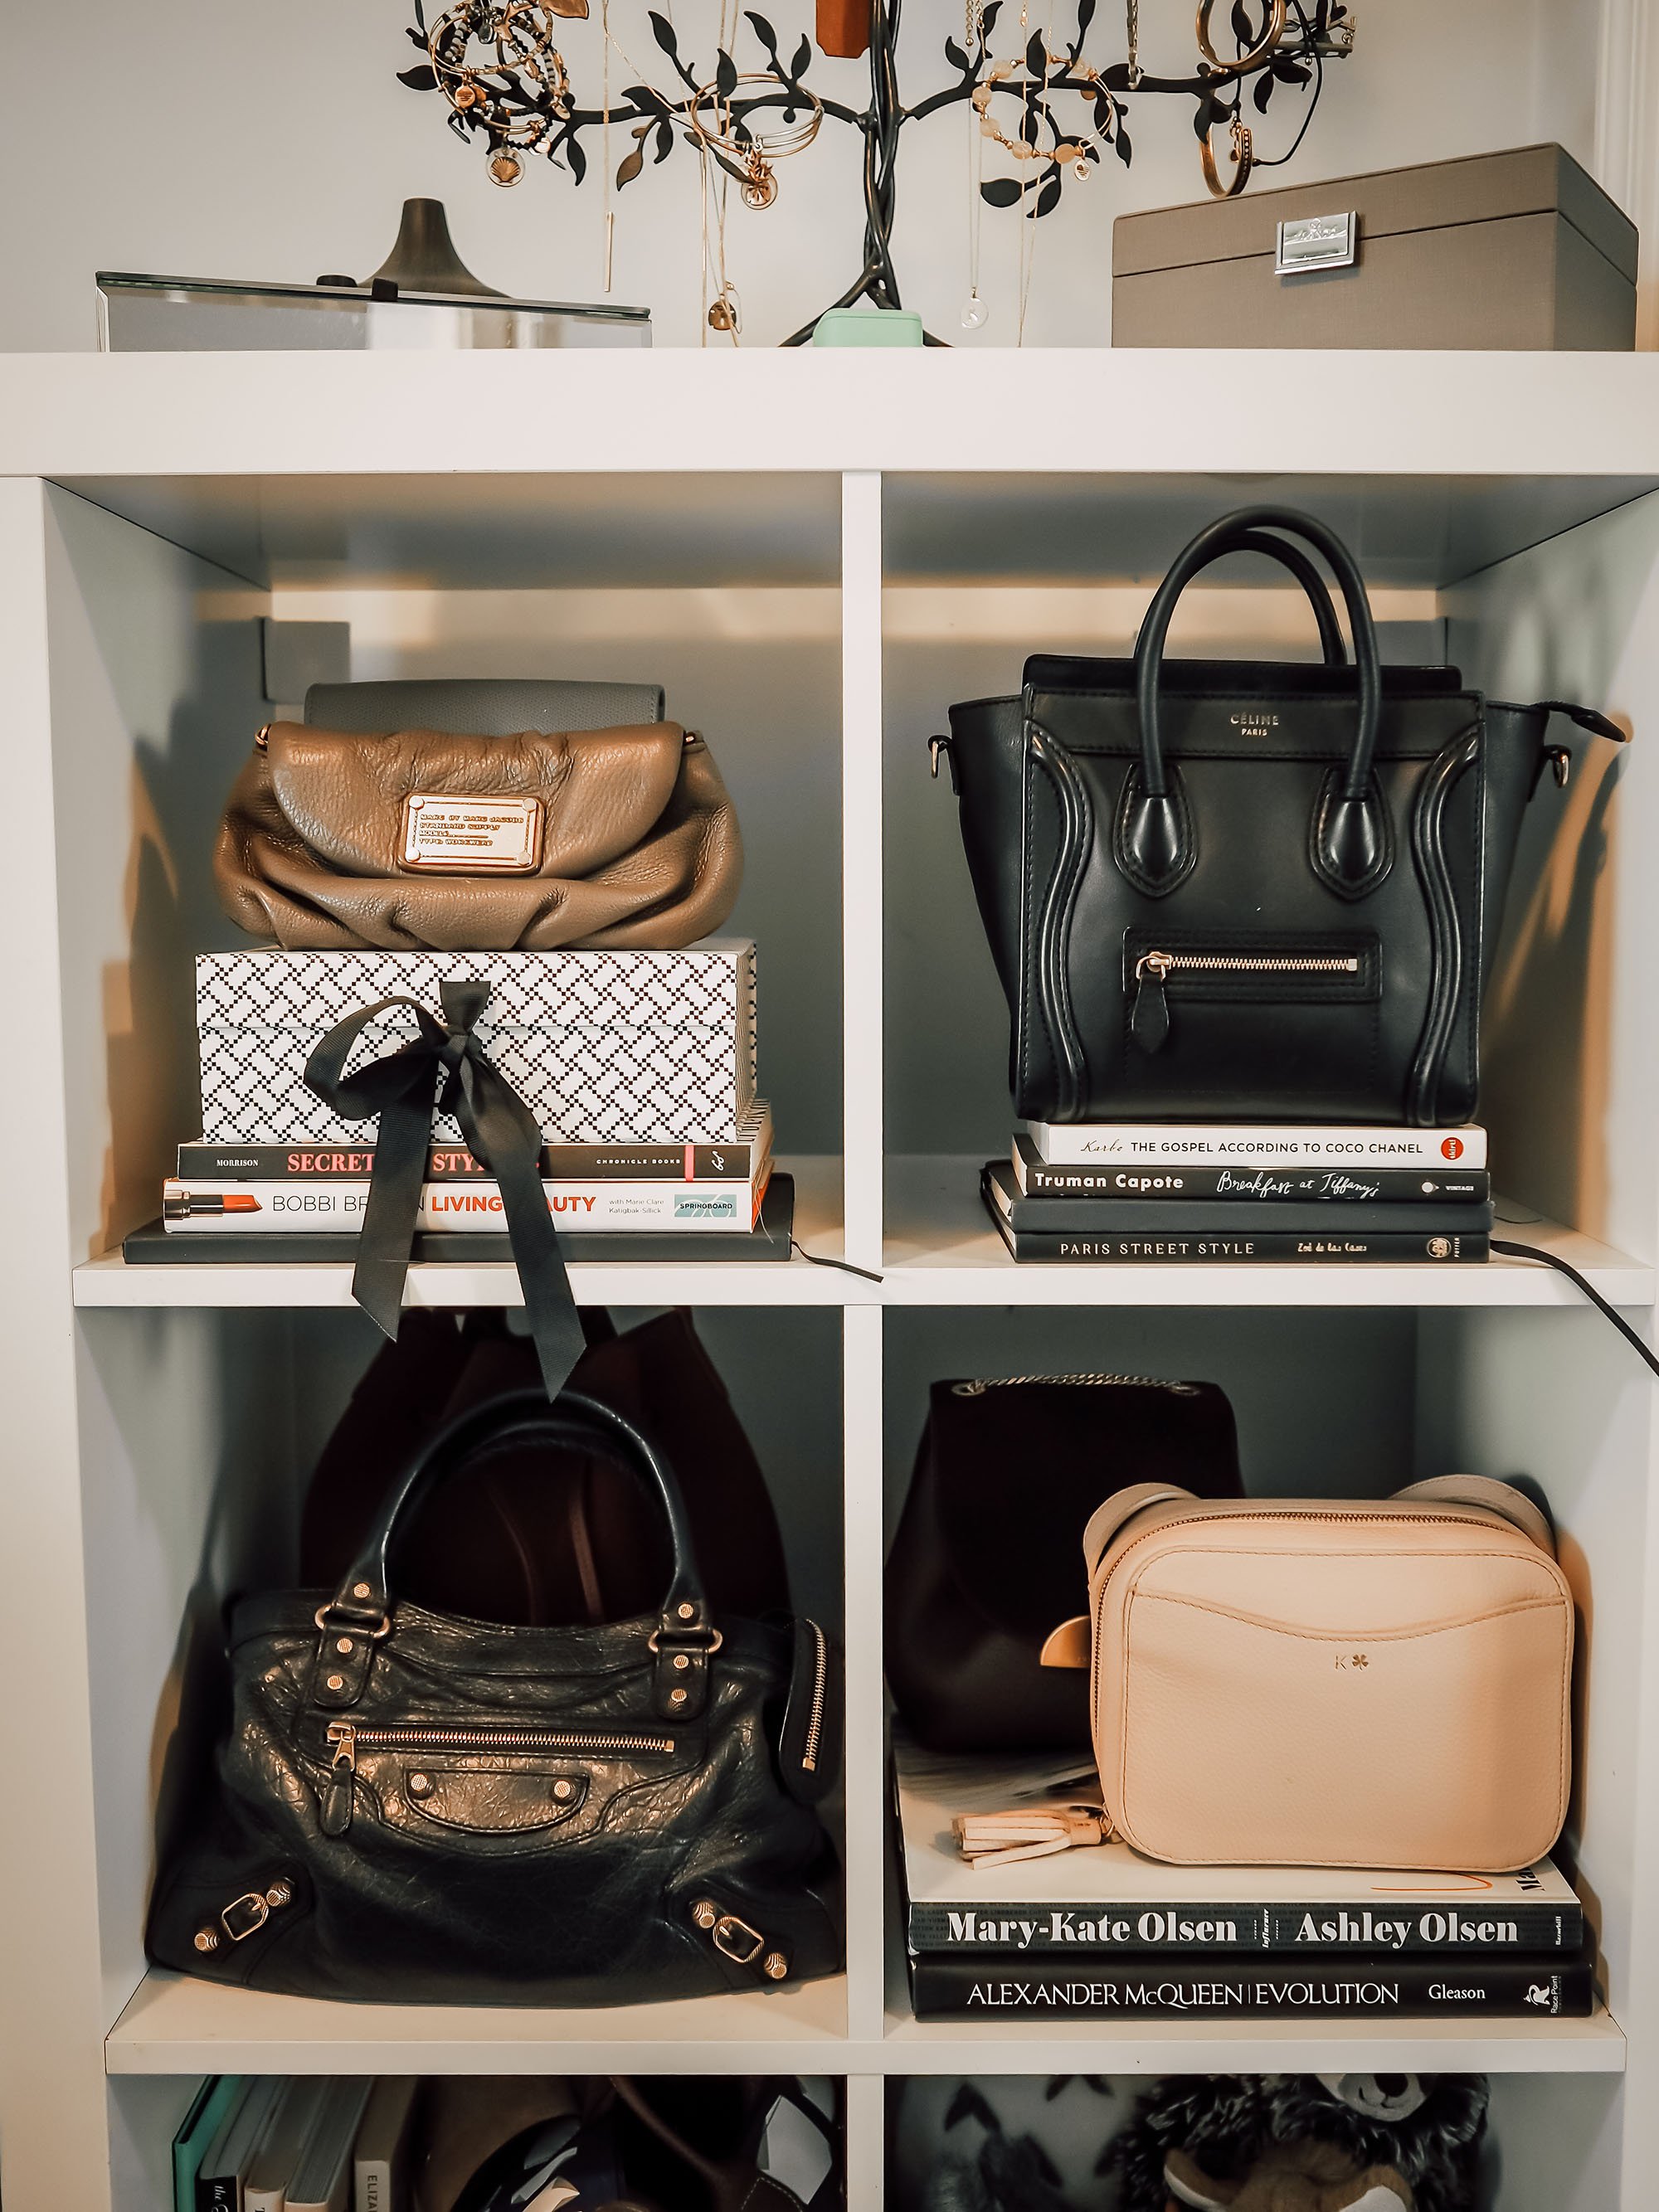 My contemporary handbag collection! : r/handbags